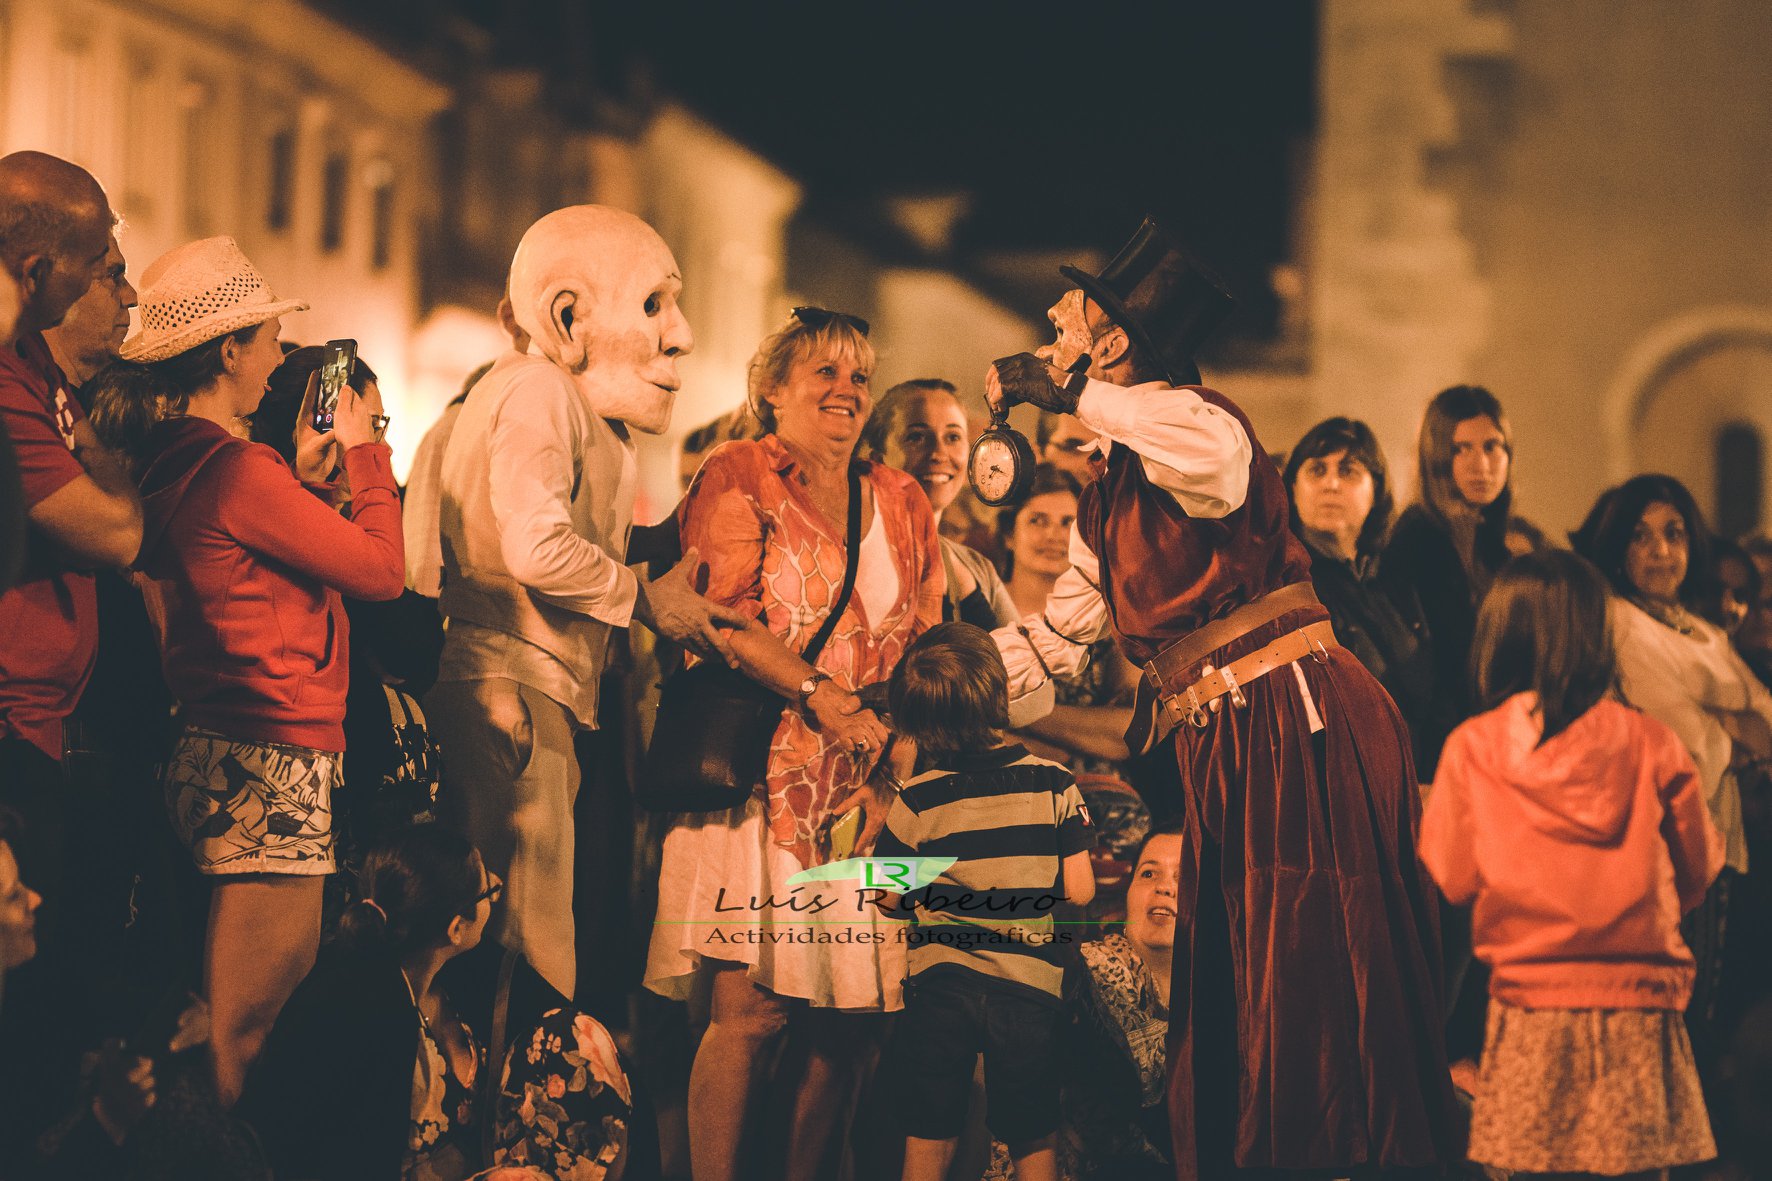 Manobras Festival Internacional de Marionetas e Formas Animada, Tomar (PT) / Fotografia de Luis Ribeiro